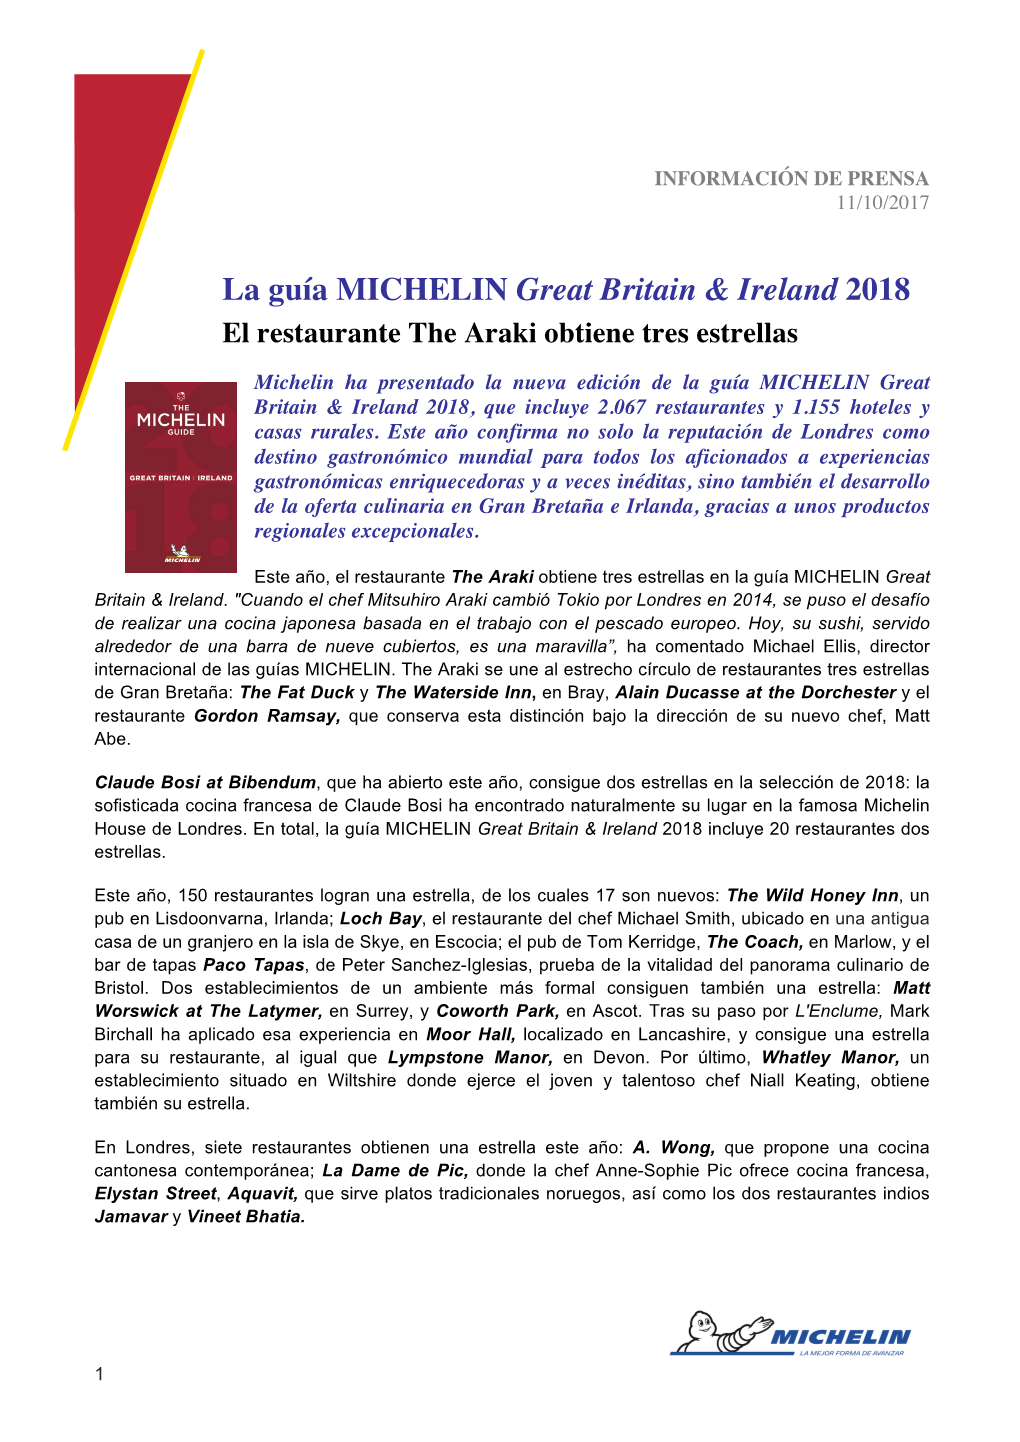 La Guía MICHELIN Great Britain & Ireland 2018